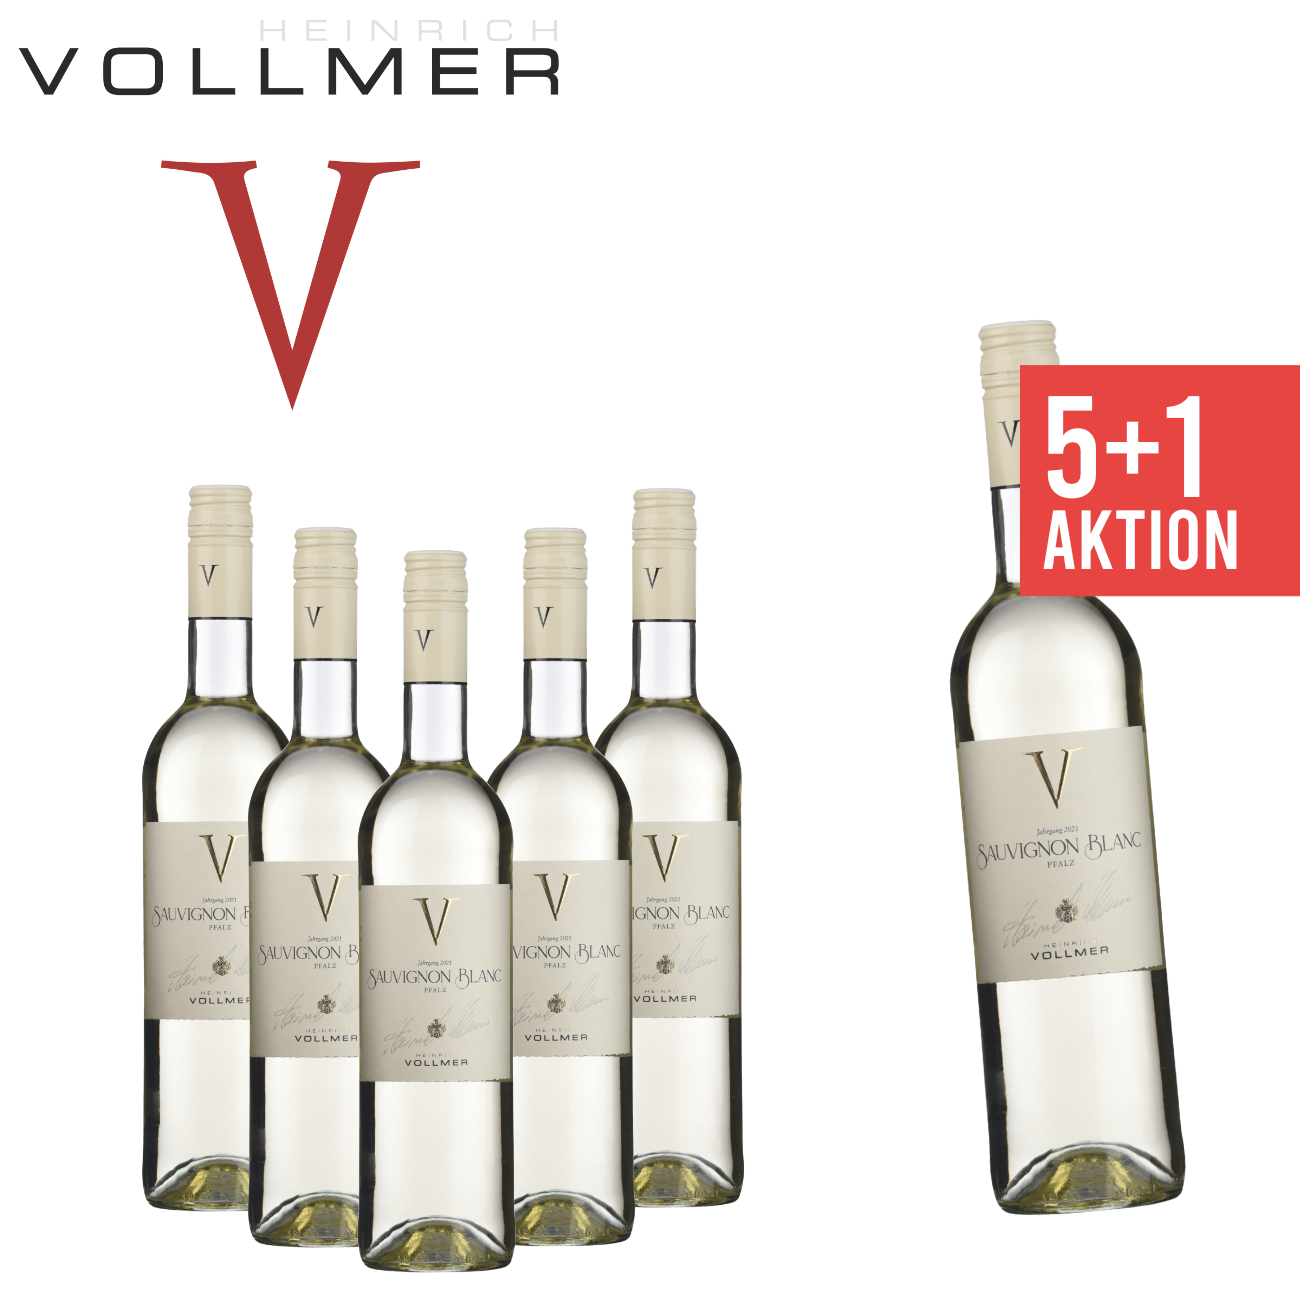 5+1 Sauvignon Blanc feinherb 0,75 L Traubenspiel - Weingut Heinrich Vollmer